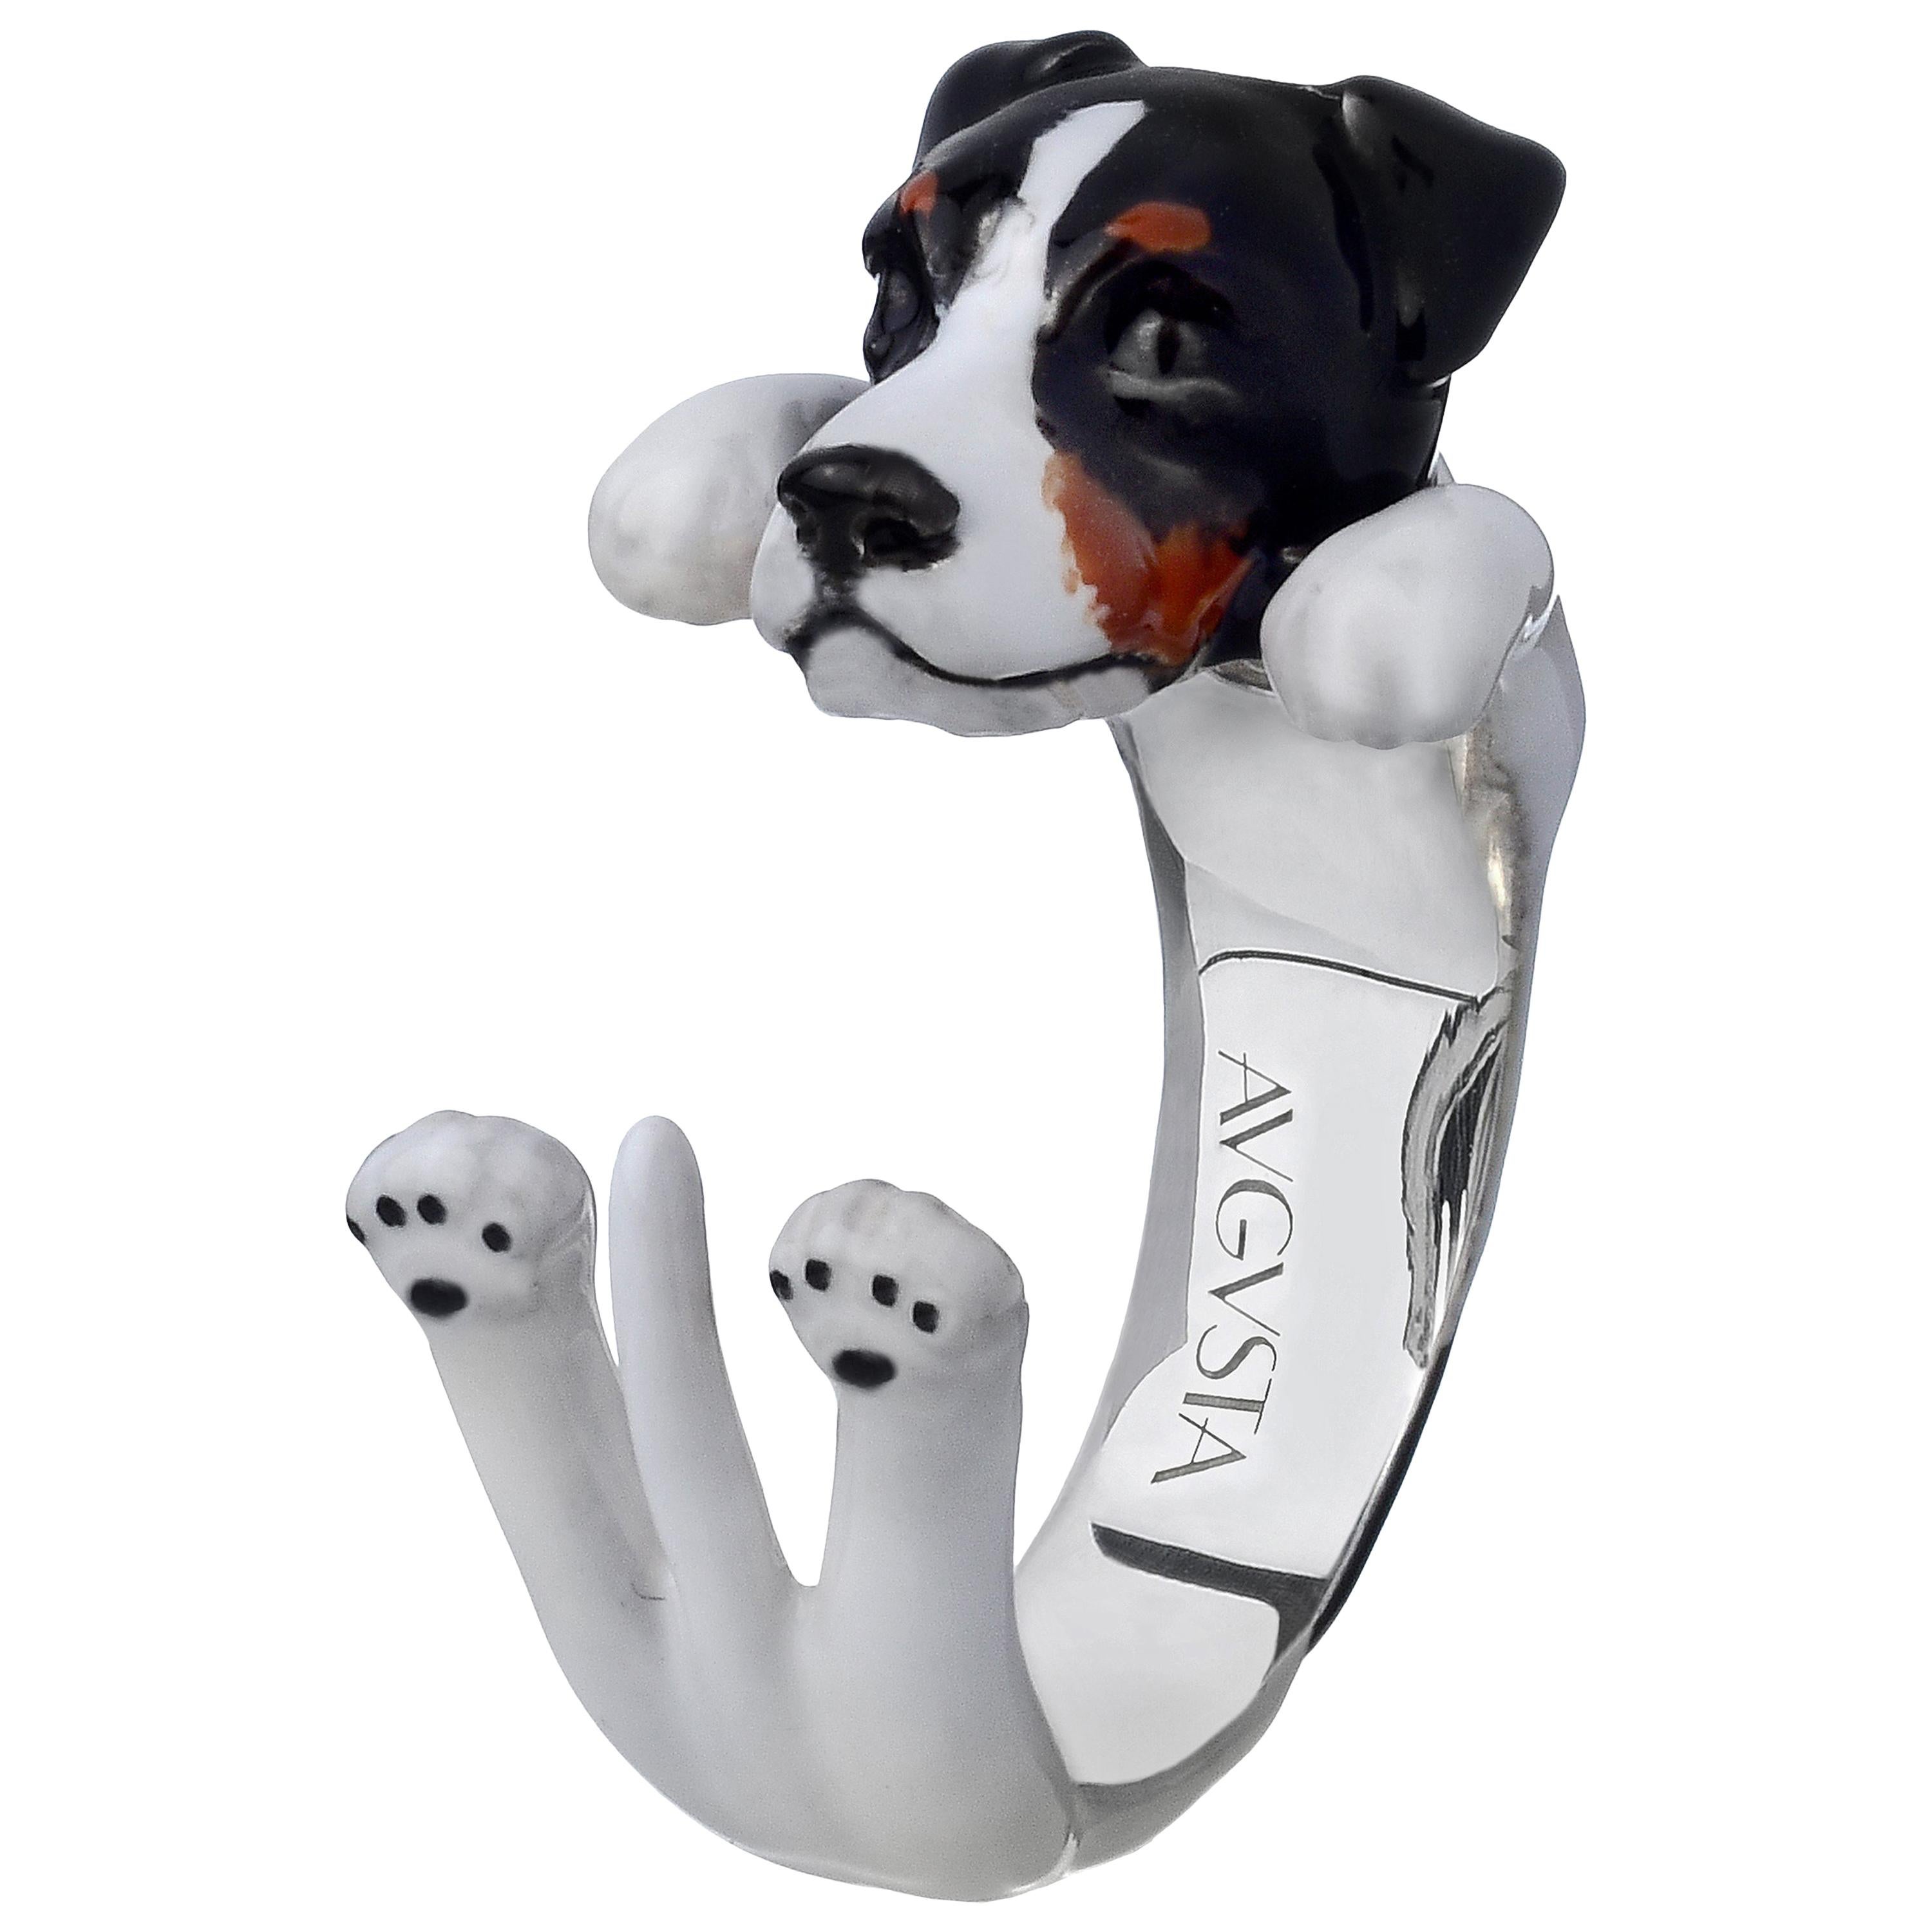 Bague personnalisable chien Jack Russell en argent sterling 925 émaillé noir, brun et blanc